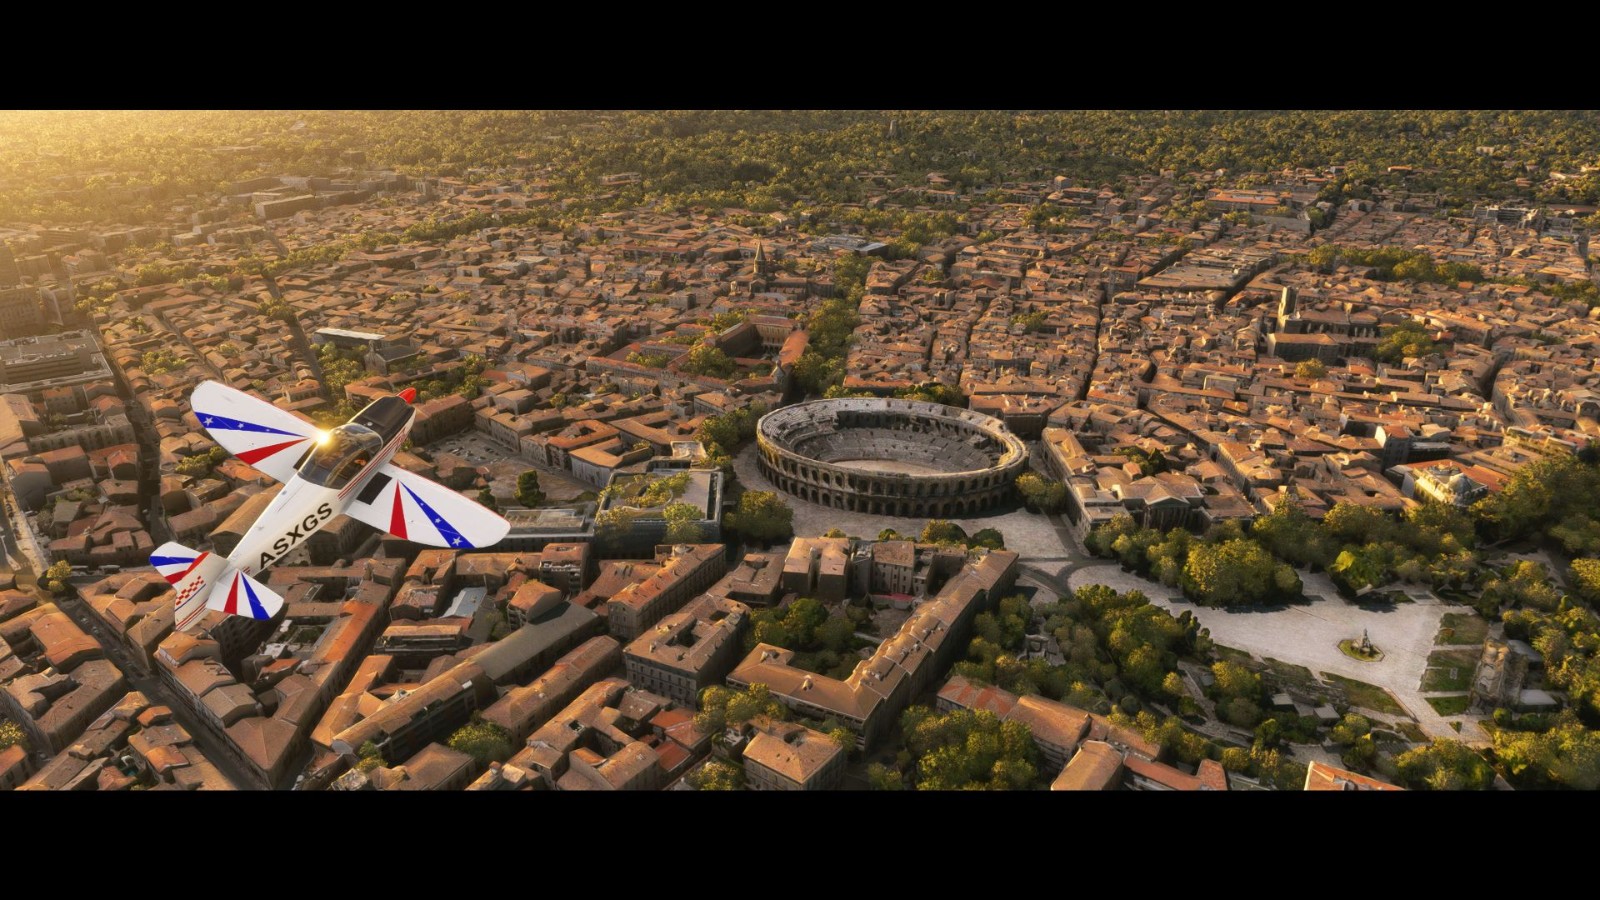 《微軟飛行模擬》更新5個美麗法國城市和經典機型